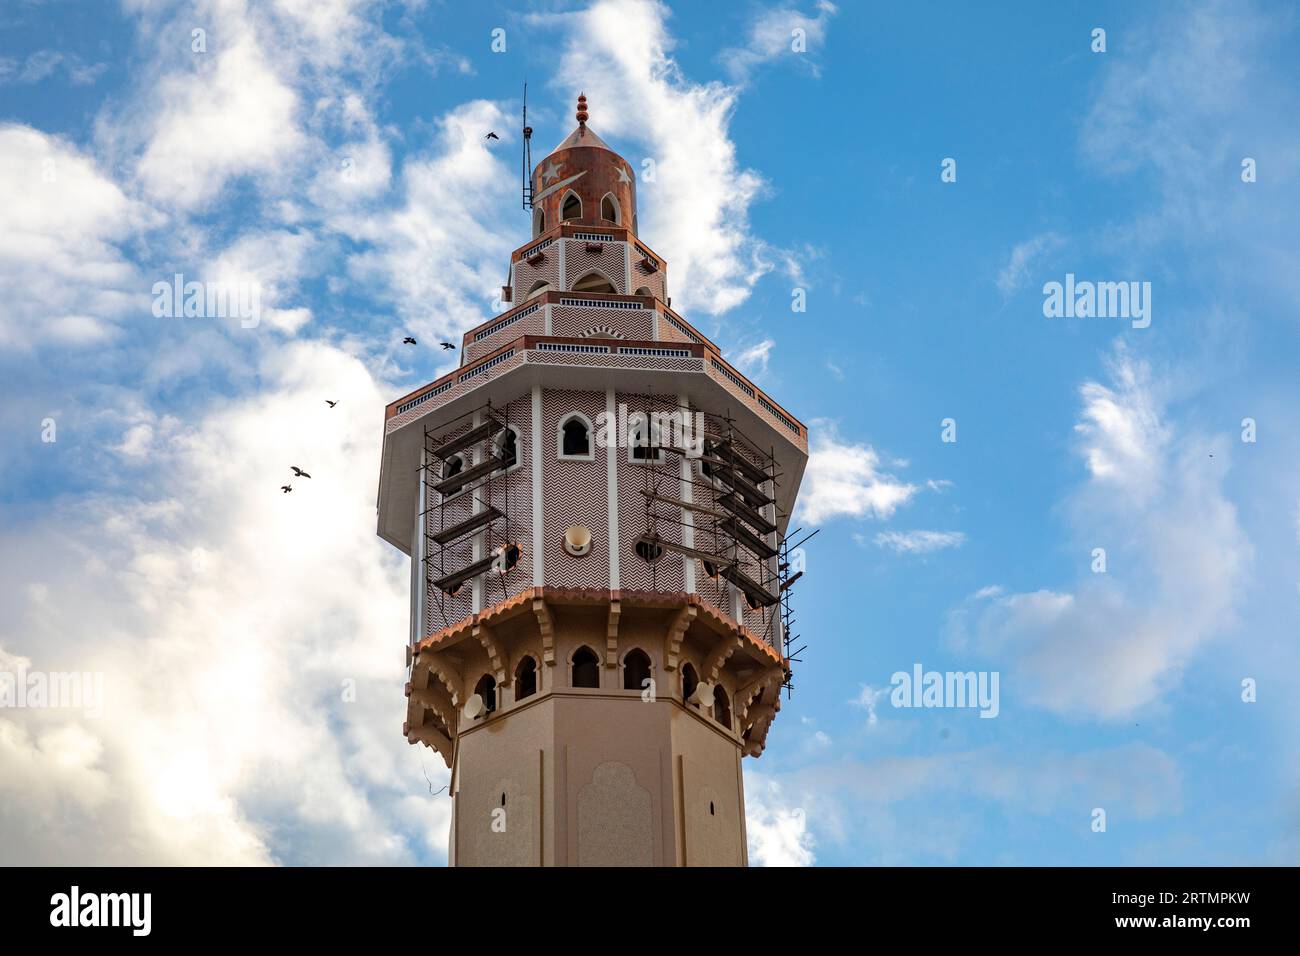 Minaret de la grande mosquée de Touba, Sénégal (connu sous le nom de Lamp Fall) Banque D'Images